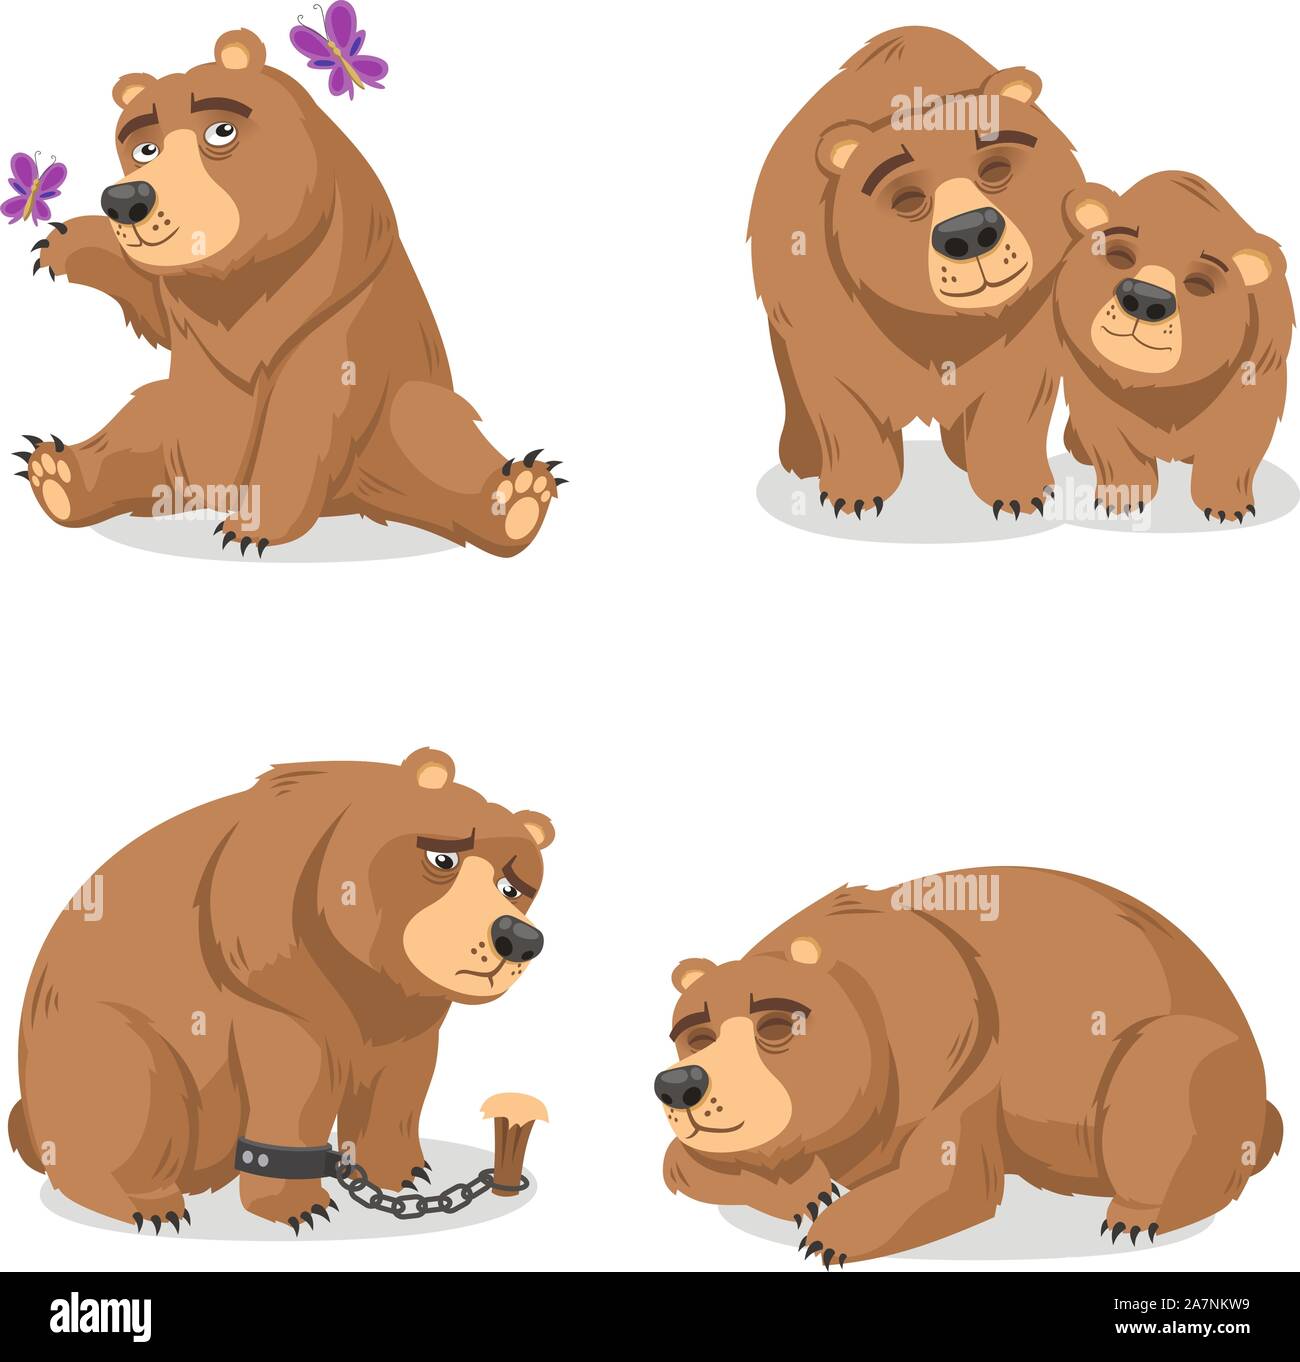 Grizzly Orso Bruno illustrazione vettoriale cartoon set, Marrone con orso grizzly in quattro diverse situazioni come orso giocando con butterfly, orso con b Illustrazione Vettoriale